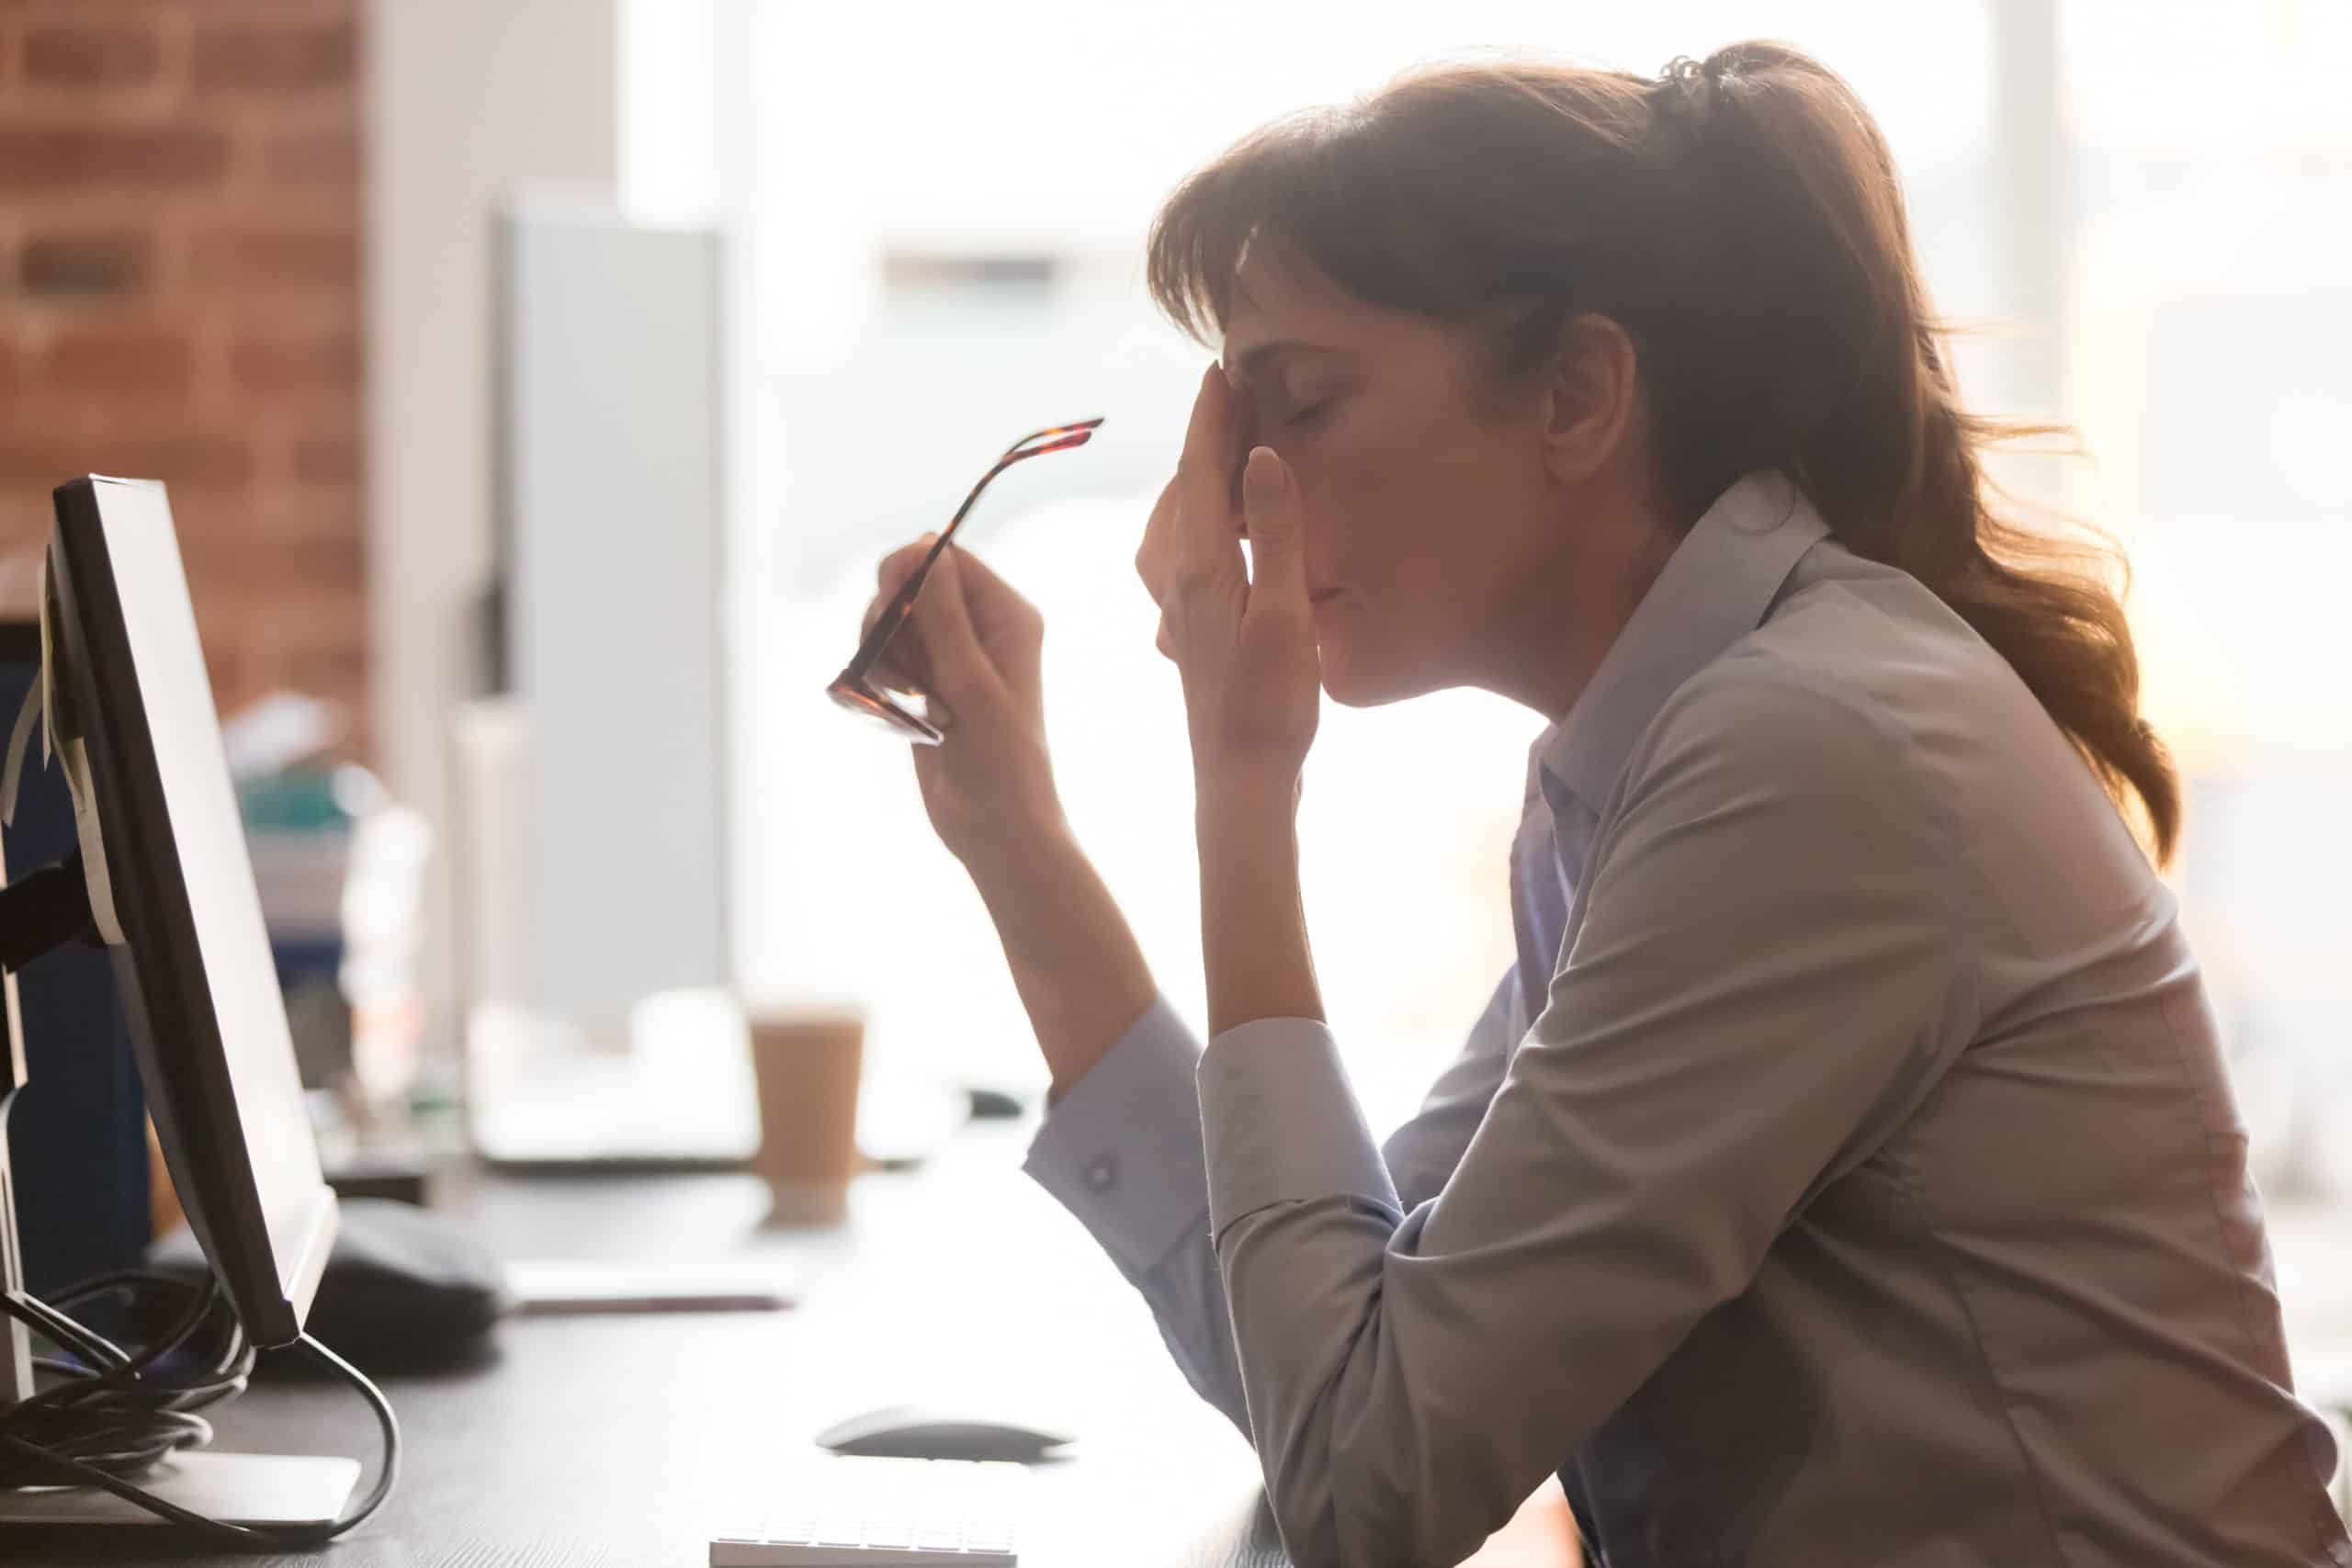 Utmattet kvinnelig arbeidstaker sitter ved kontorpulten og tar av briller